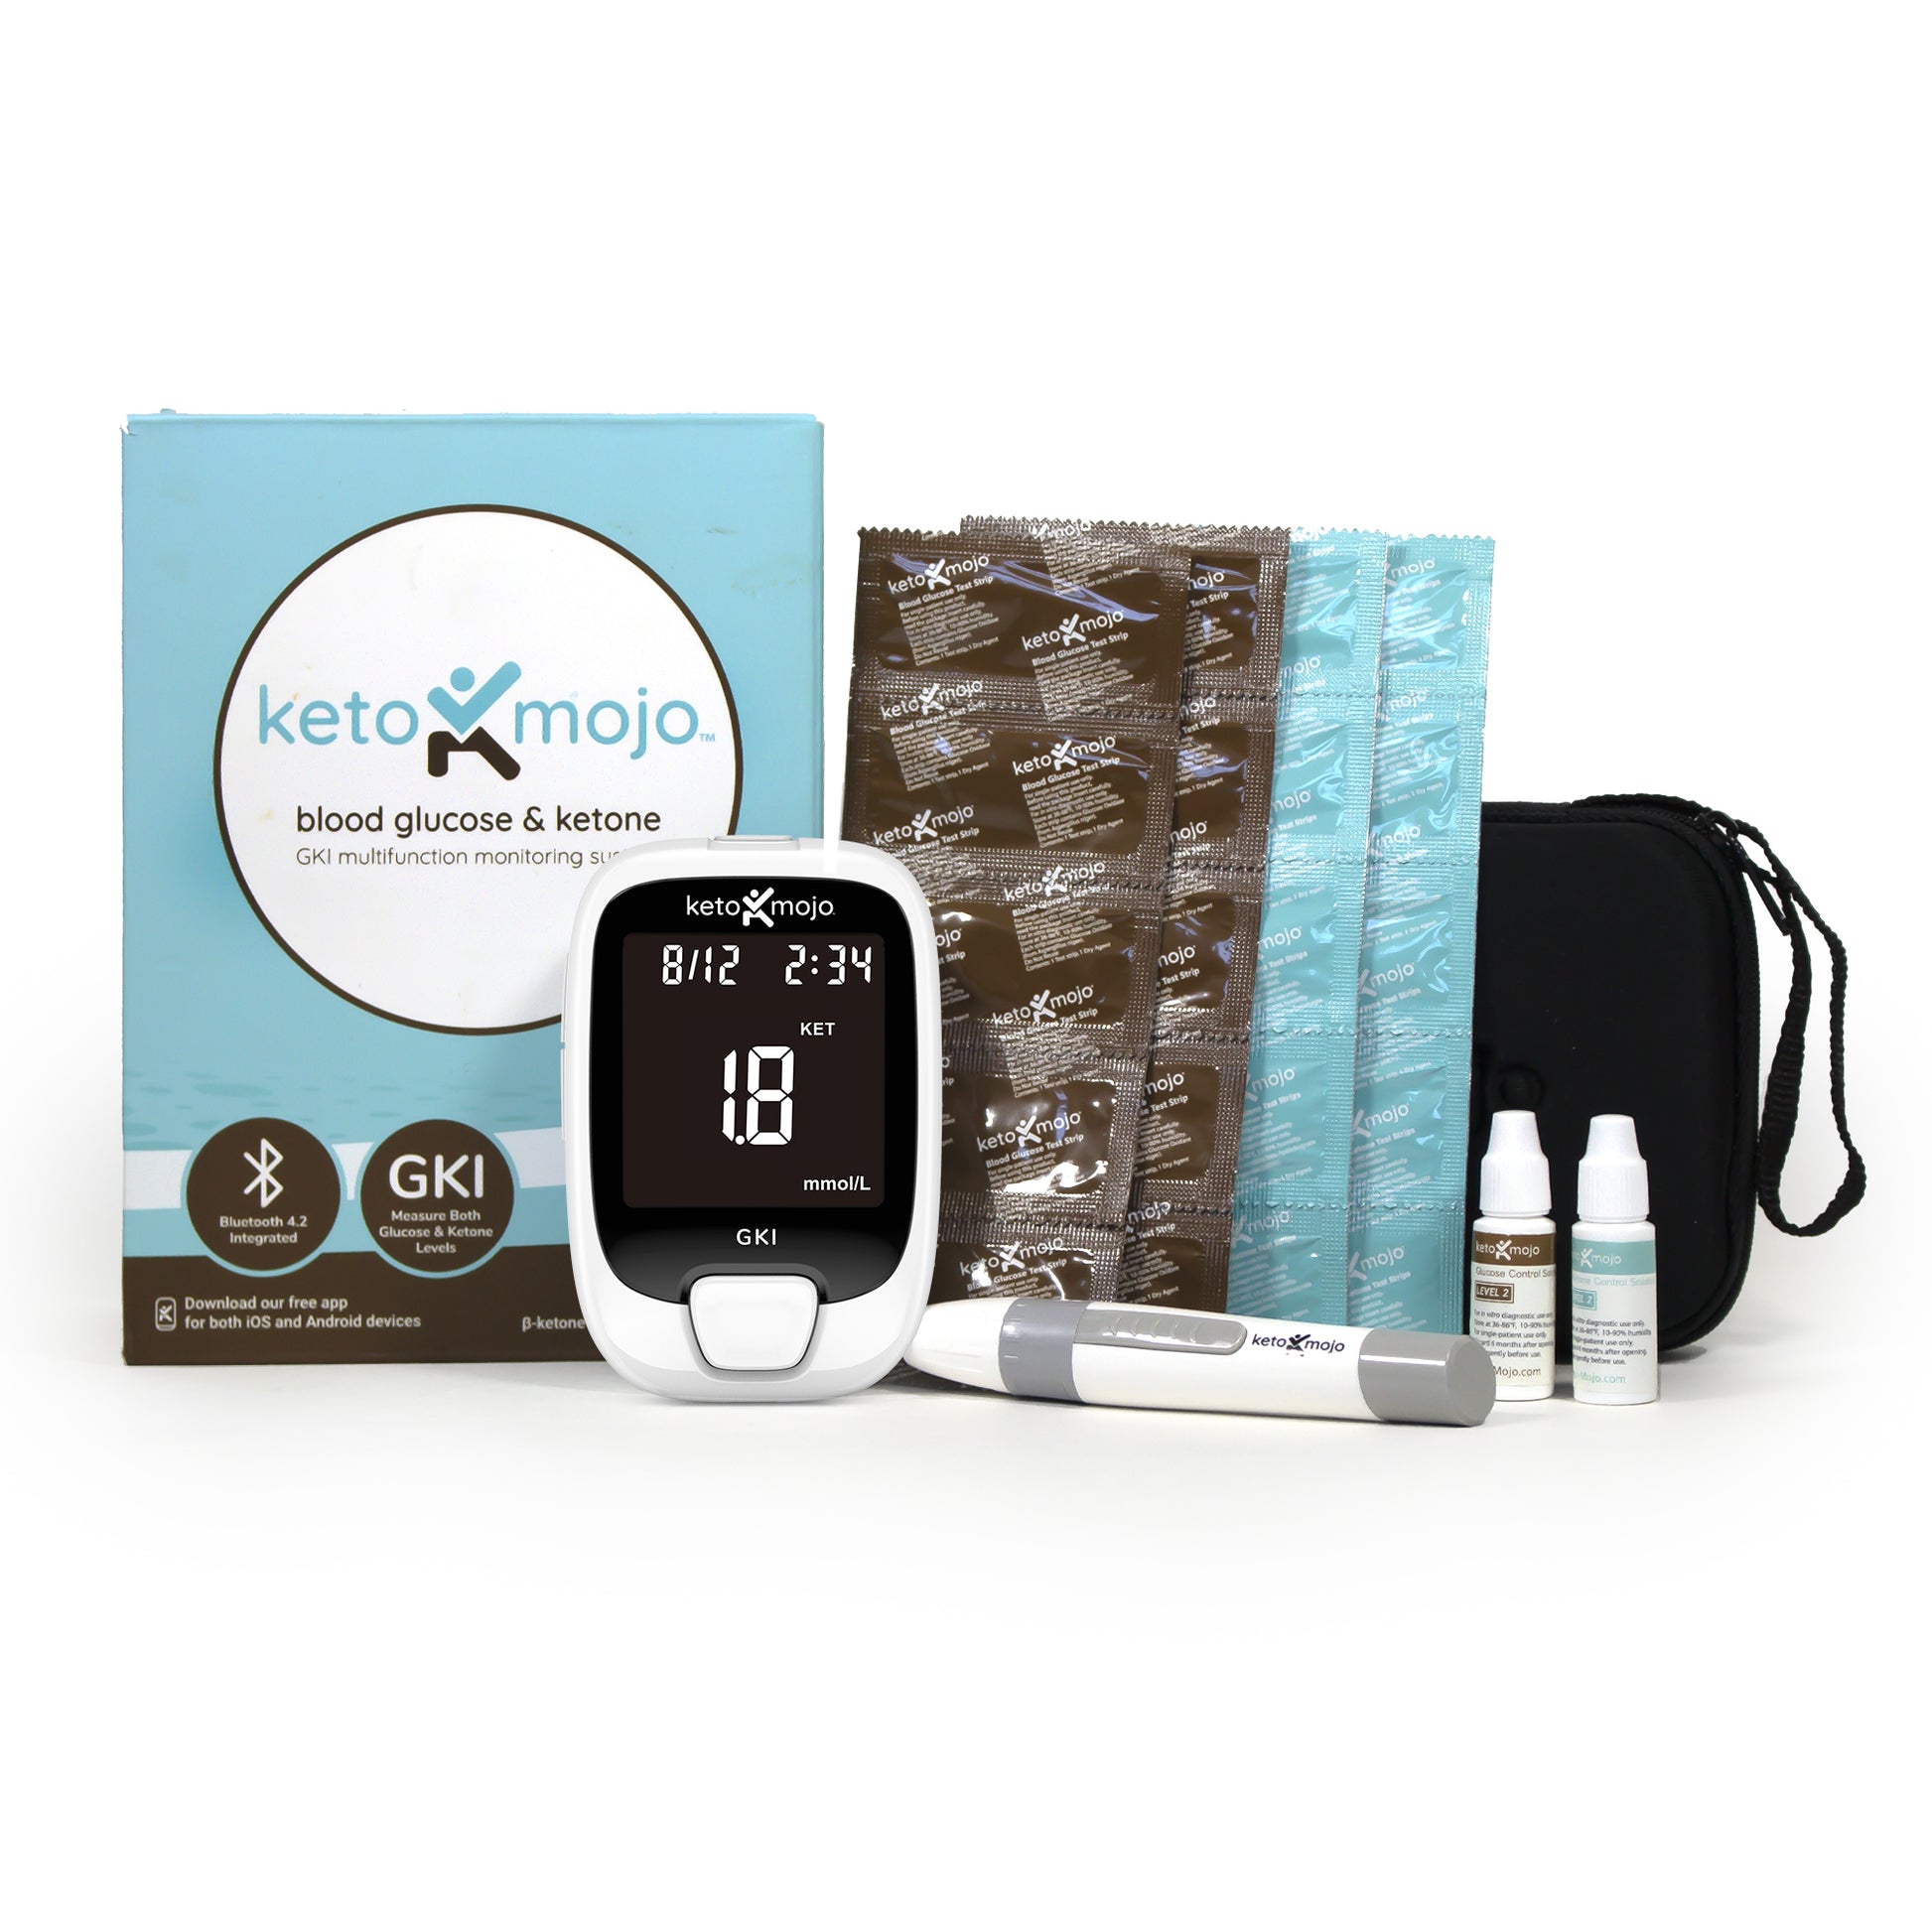 KETO-MOJO GKI Bluetooth Glucose & Ketone Testing Kit (mmol/L) +